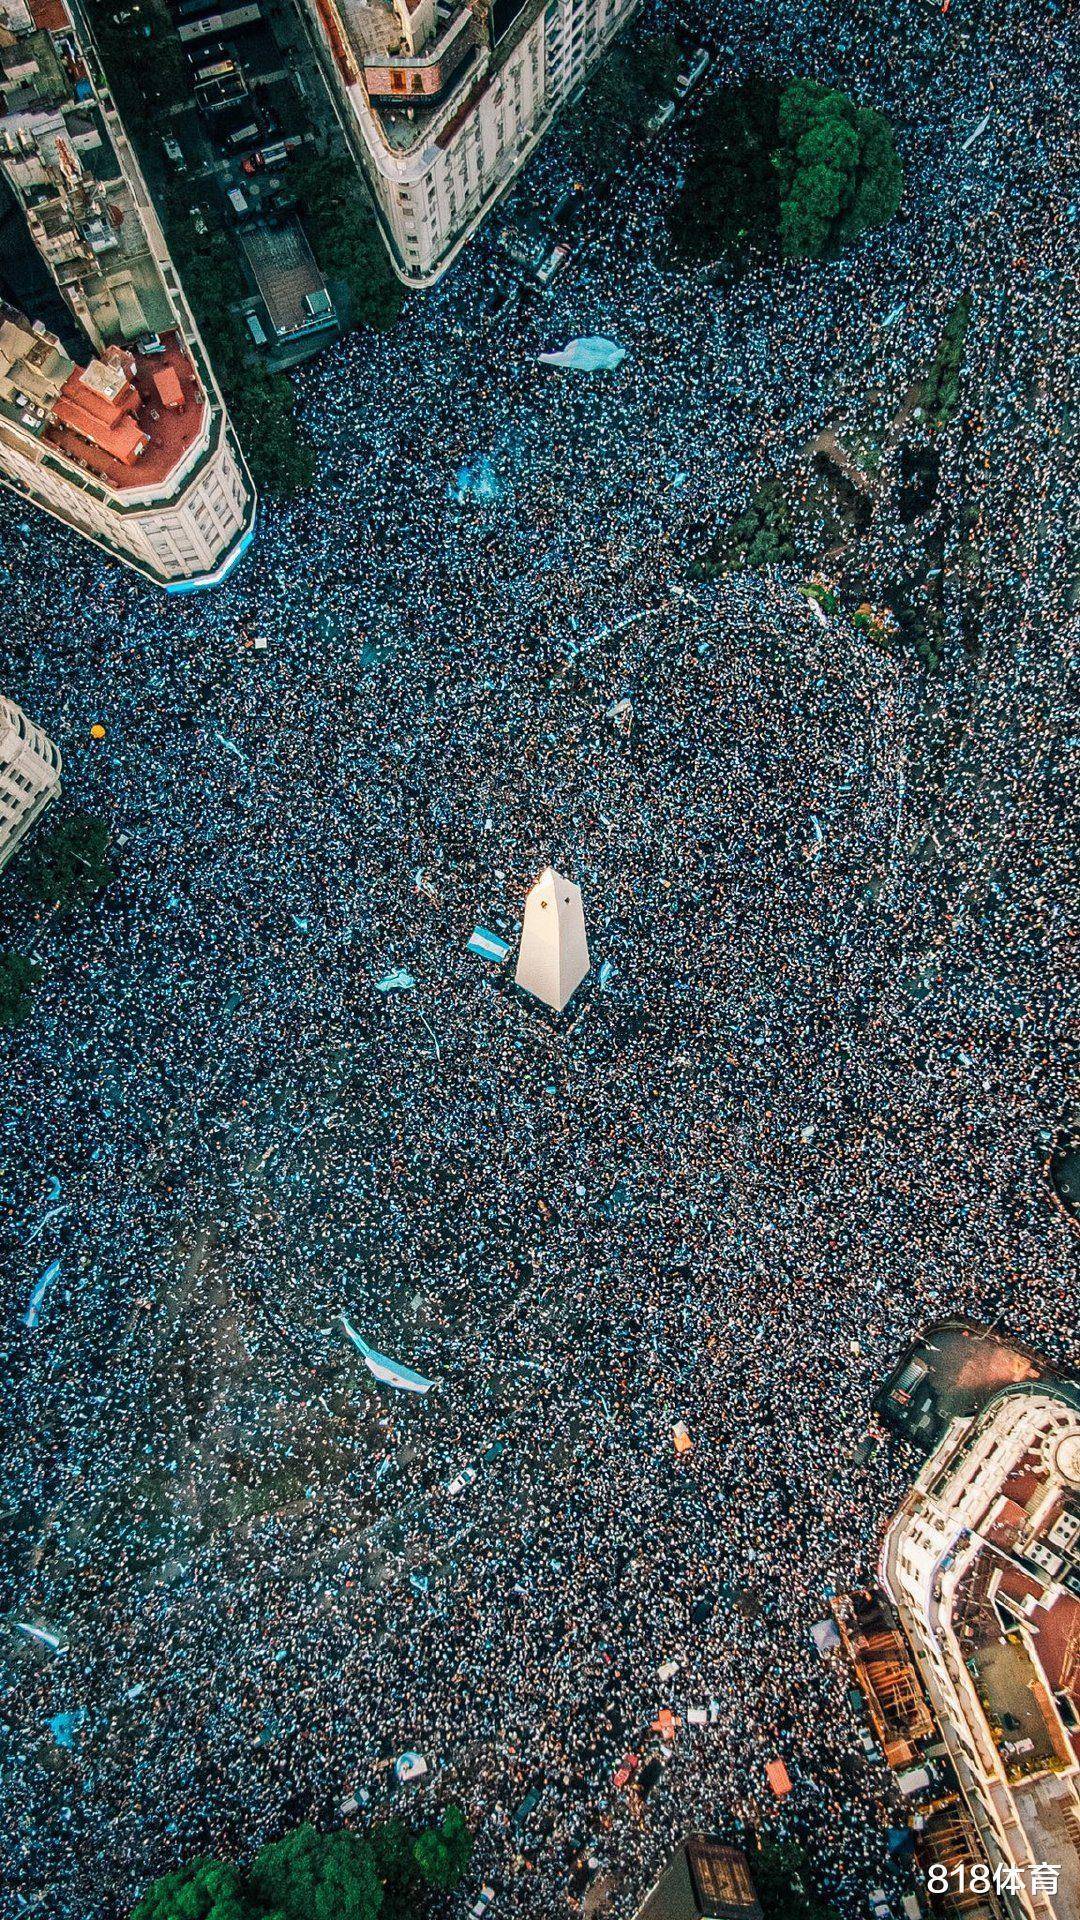 原来的人！400万人观看阿根廷冠军秀，大巴难行直升飞机乱飞